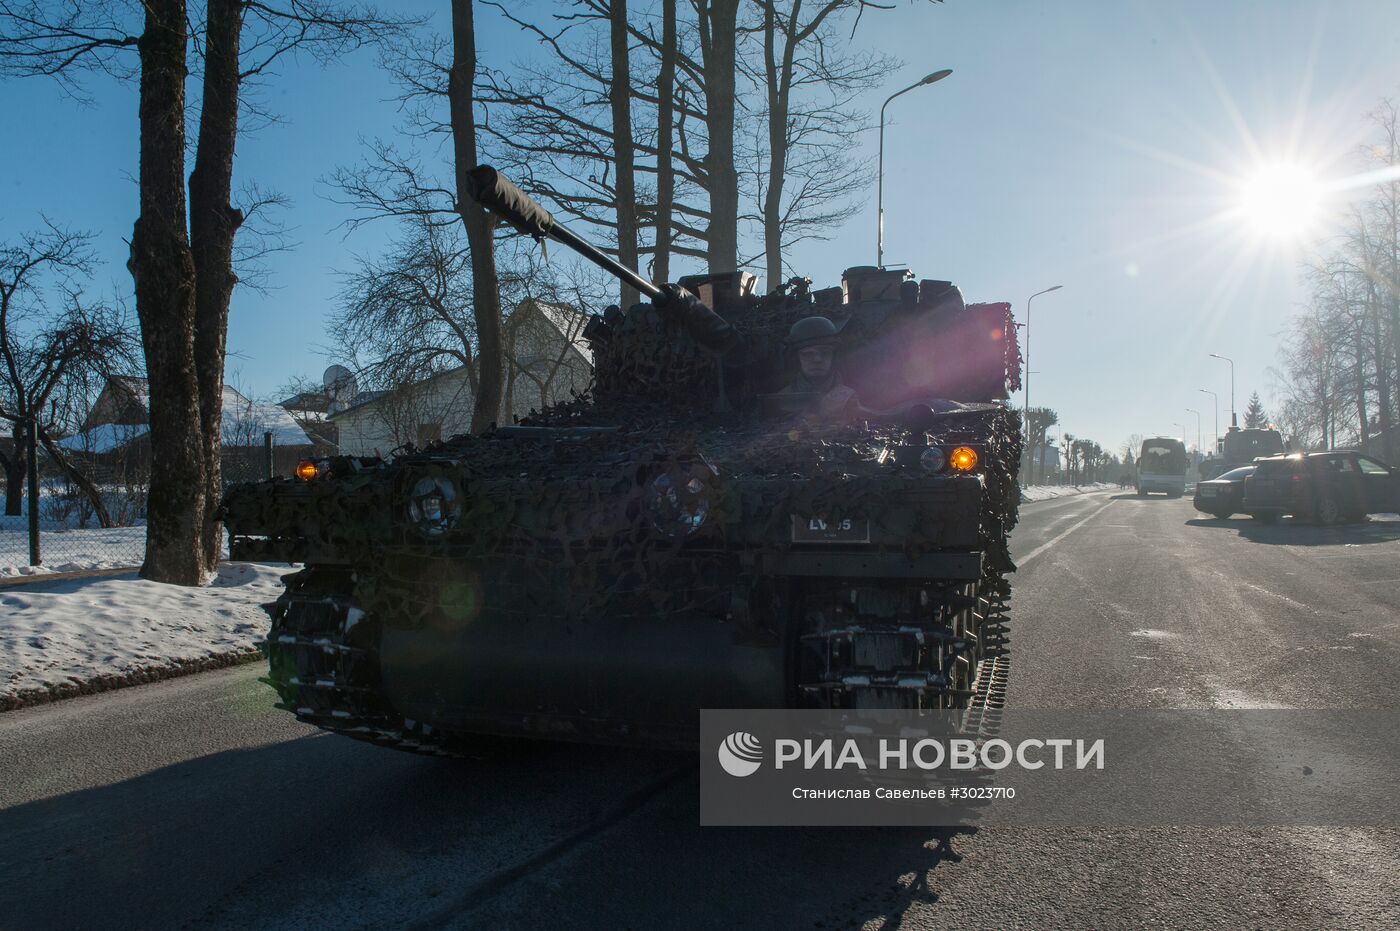 Демонстрация военной техники НАТО в Латвии